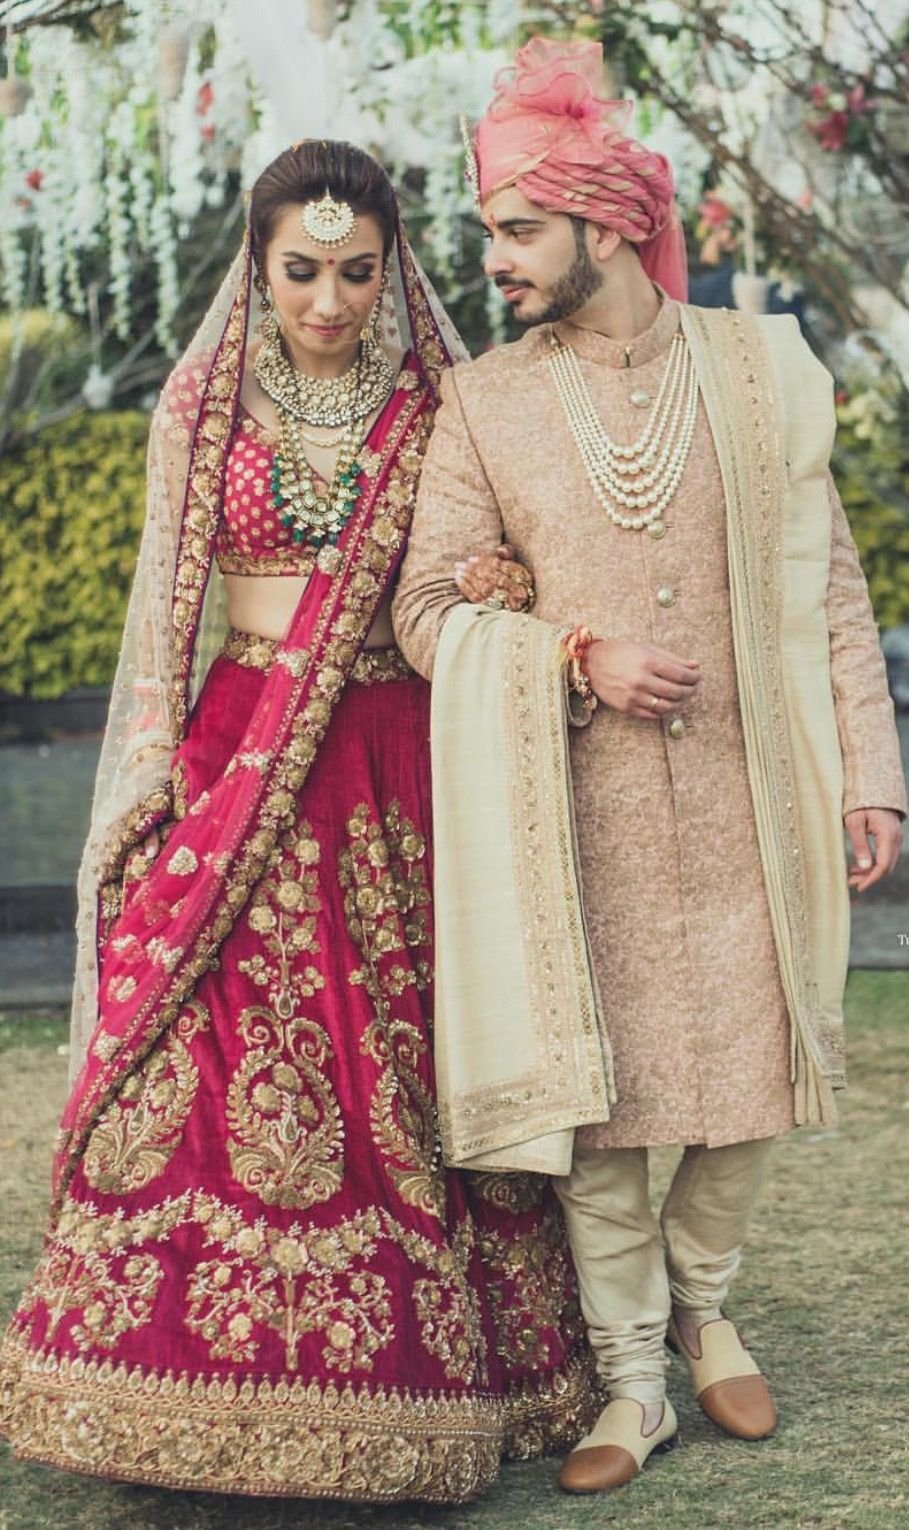 Стиль одежды индийская свадьба